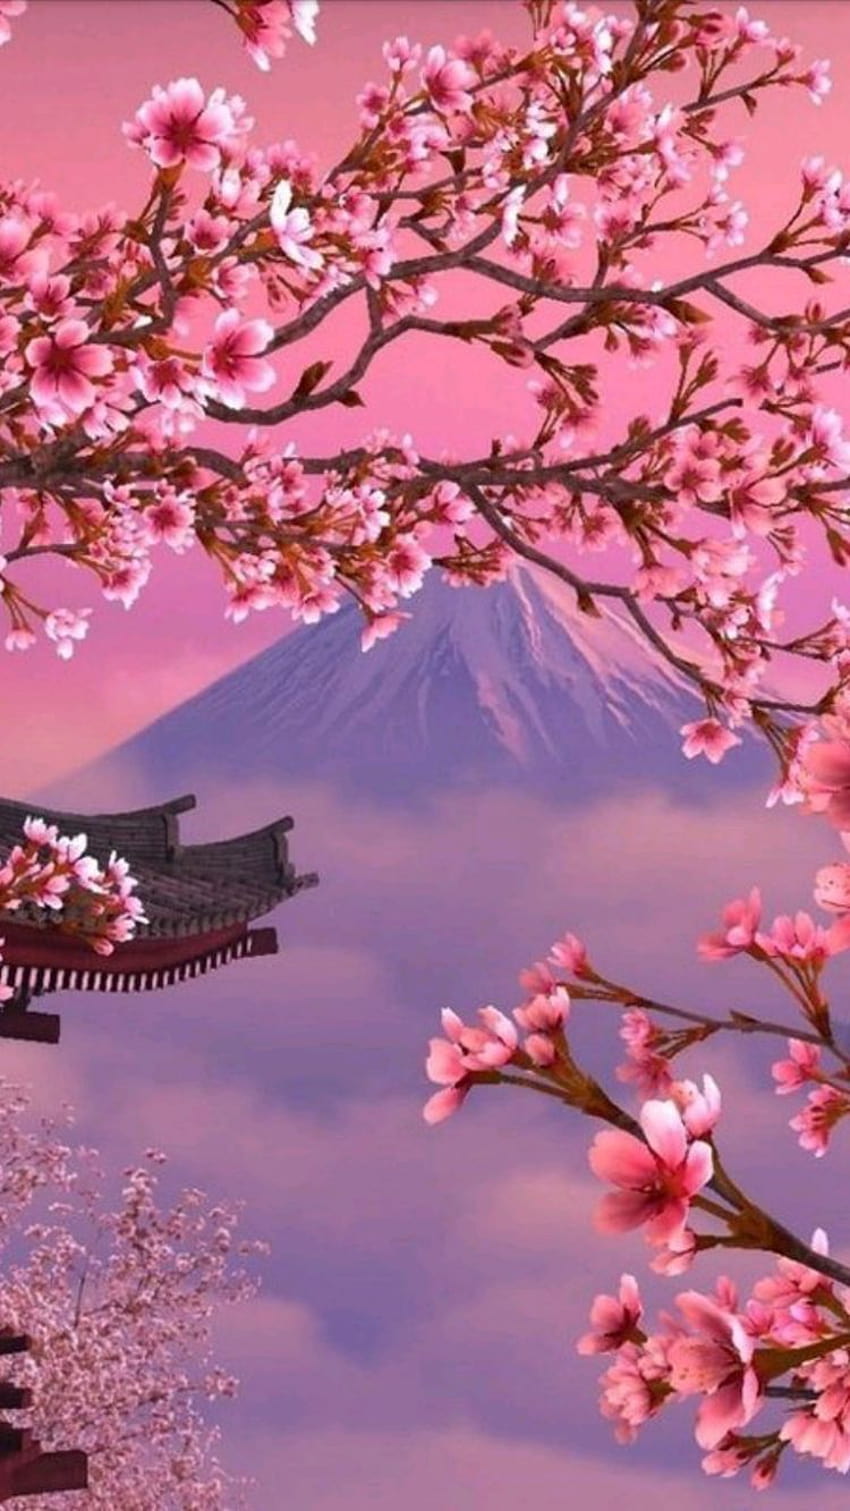 Cherry blossom i simply adore cherry blossom HD phone wallpaper